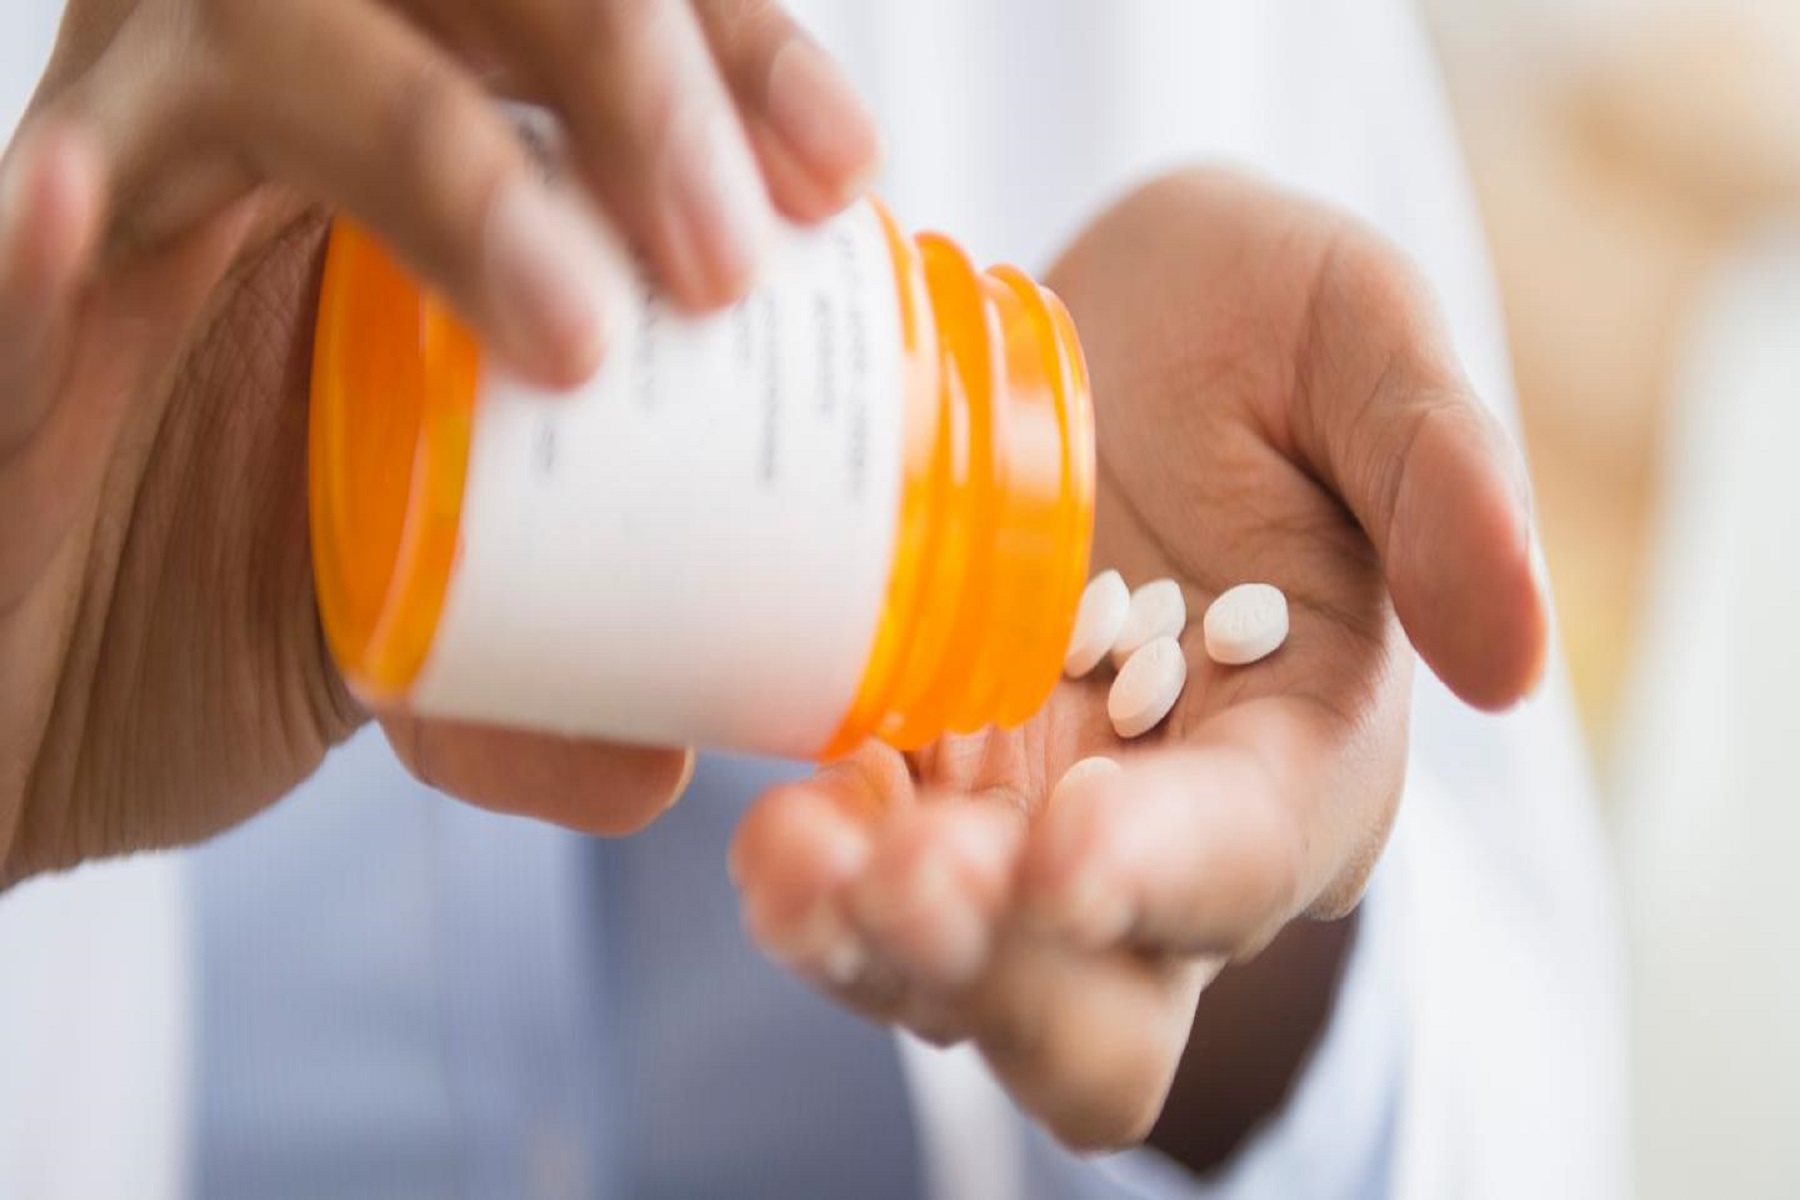 ΗΠΑ FDA: Εγκρίνει χάπι για τη θεραπεία ενηλίκων με οξύ πόνο αρκετά σοβαρό